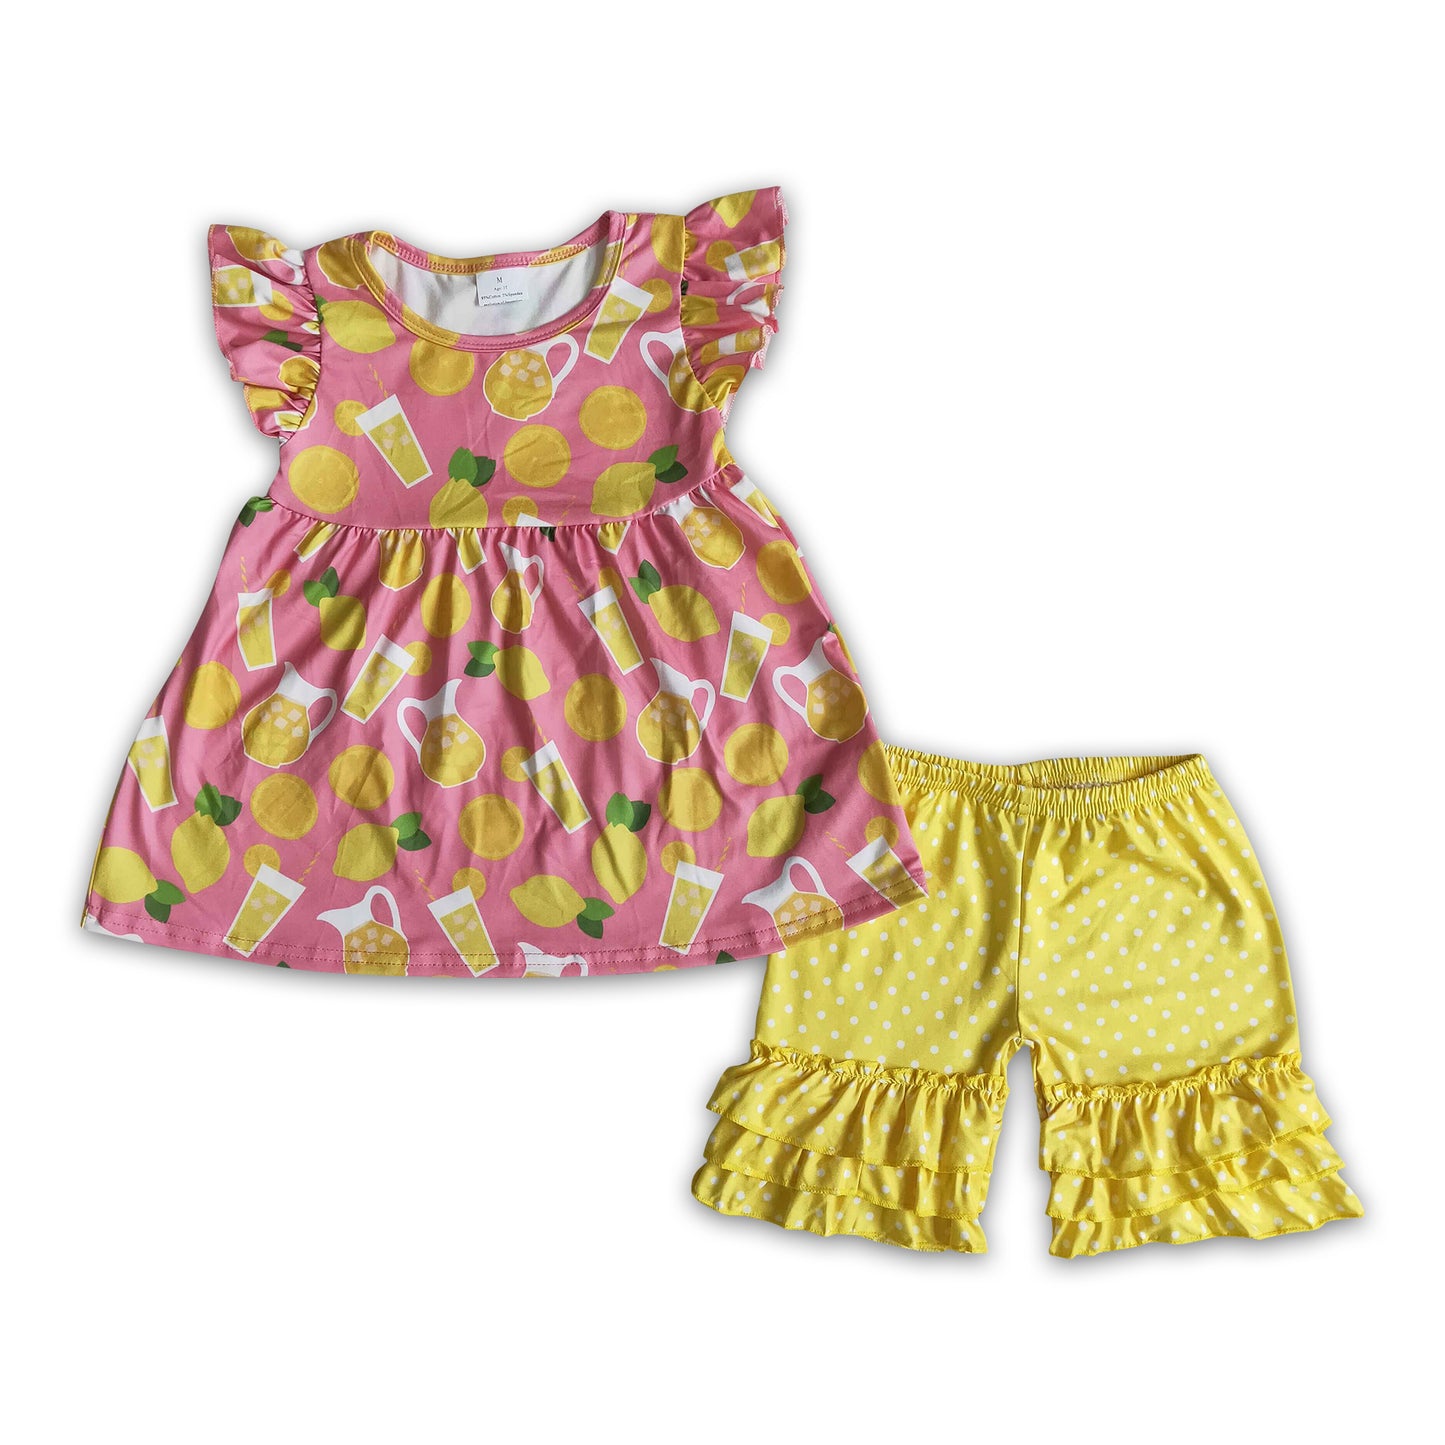 Lemon flutter sleeve polka dots ruffle shorts girls summer outfits